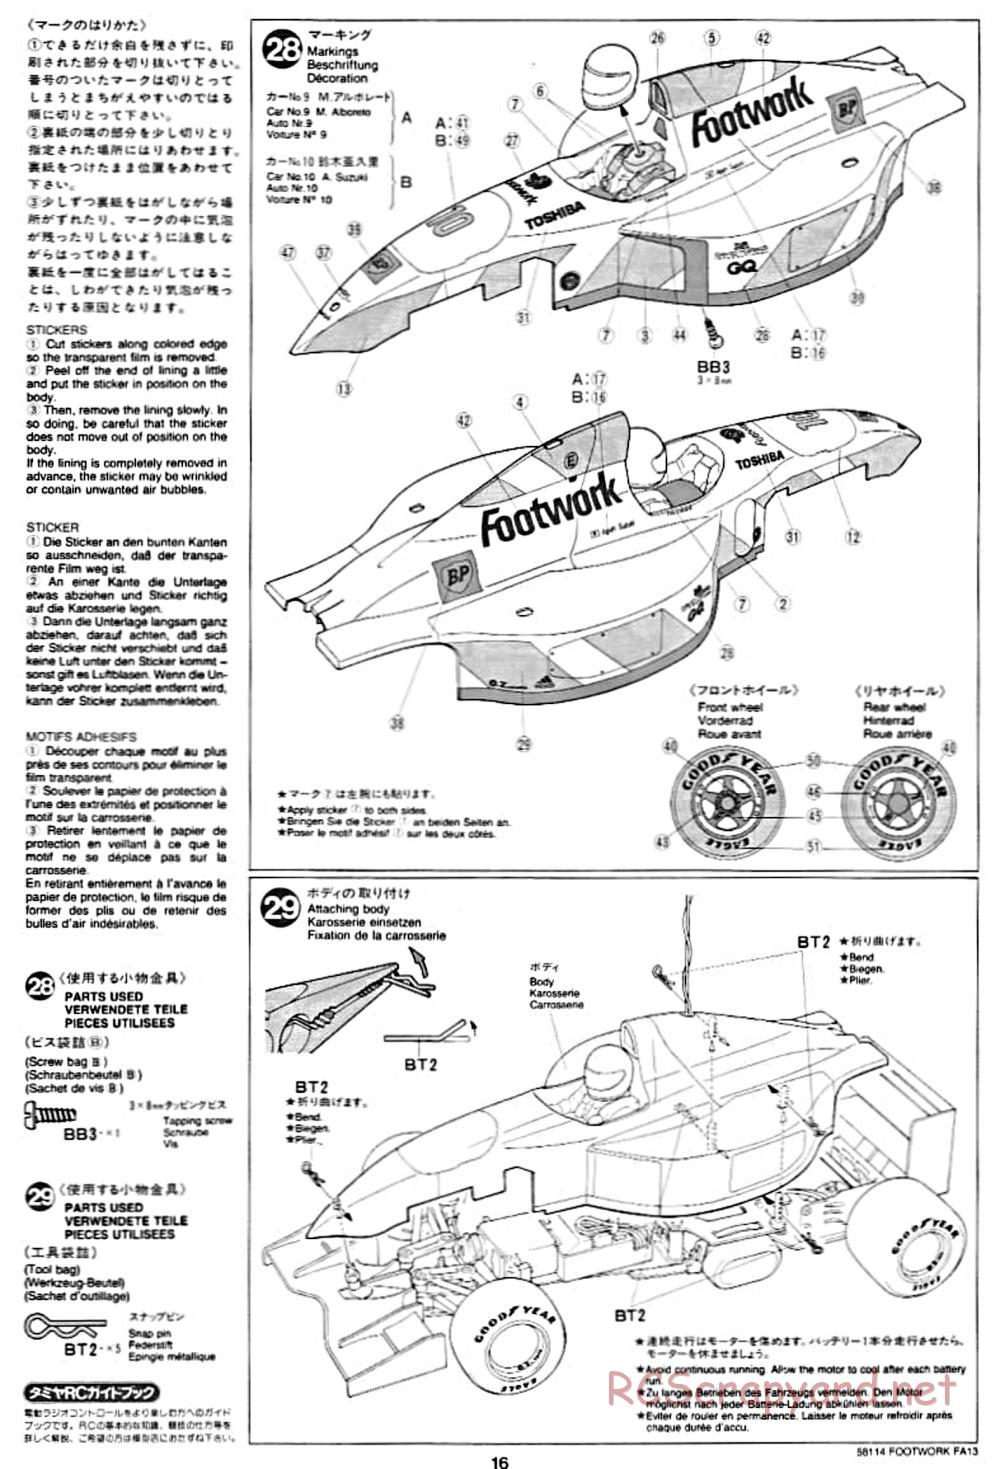 Tamiya - Footwork FA13 Mugen Honda - F102 Chassis - Manual - Page 16